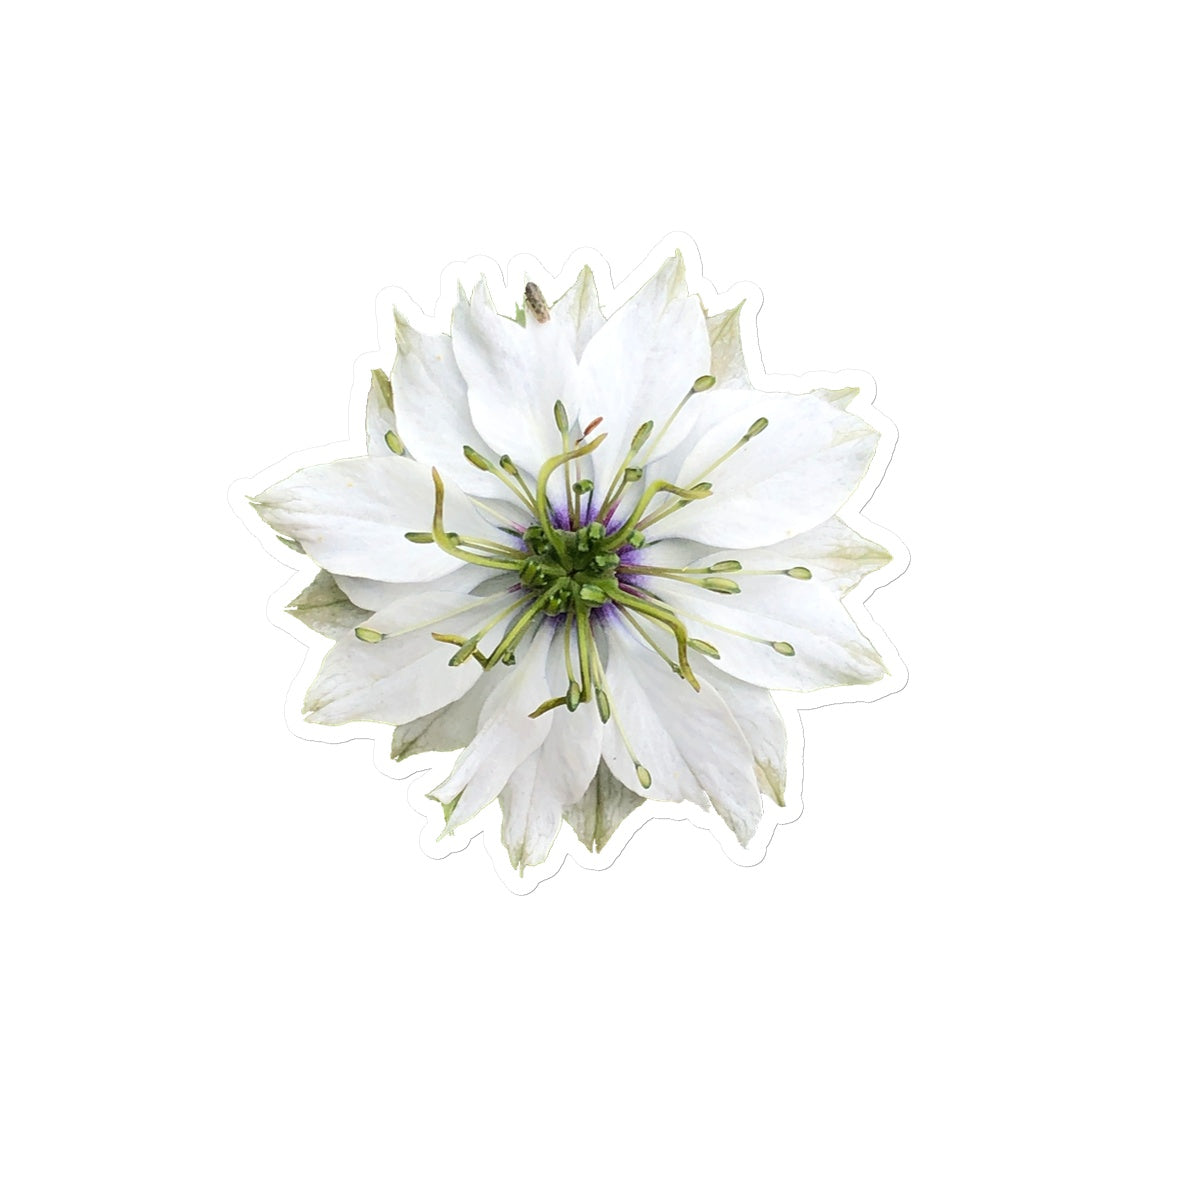 White Flower 'Nigella Love in the Mist' Sticker